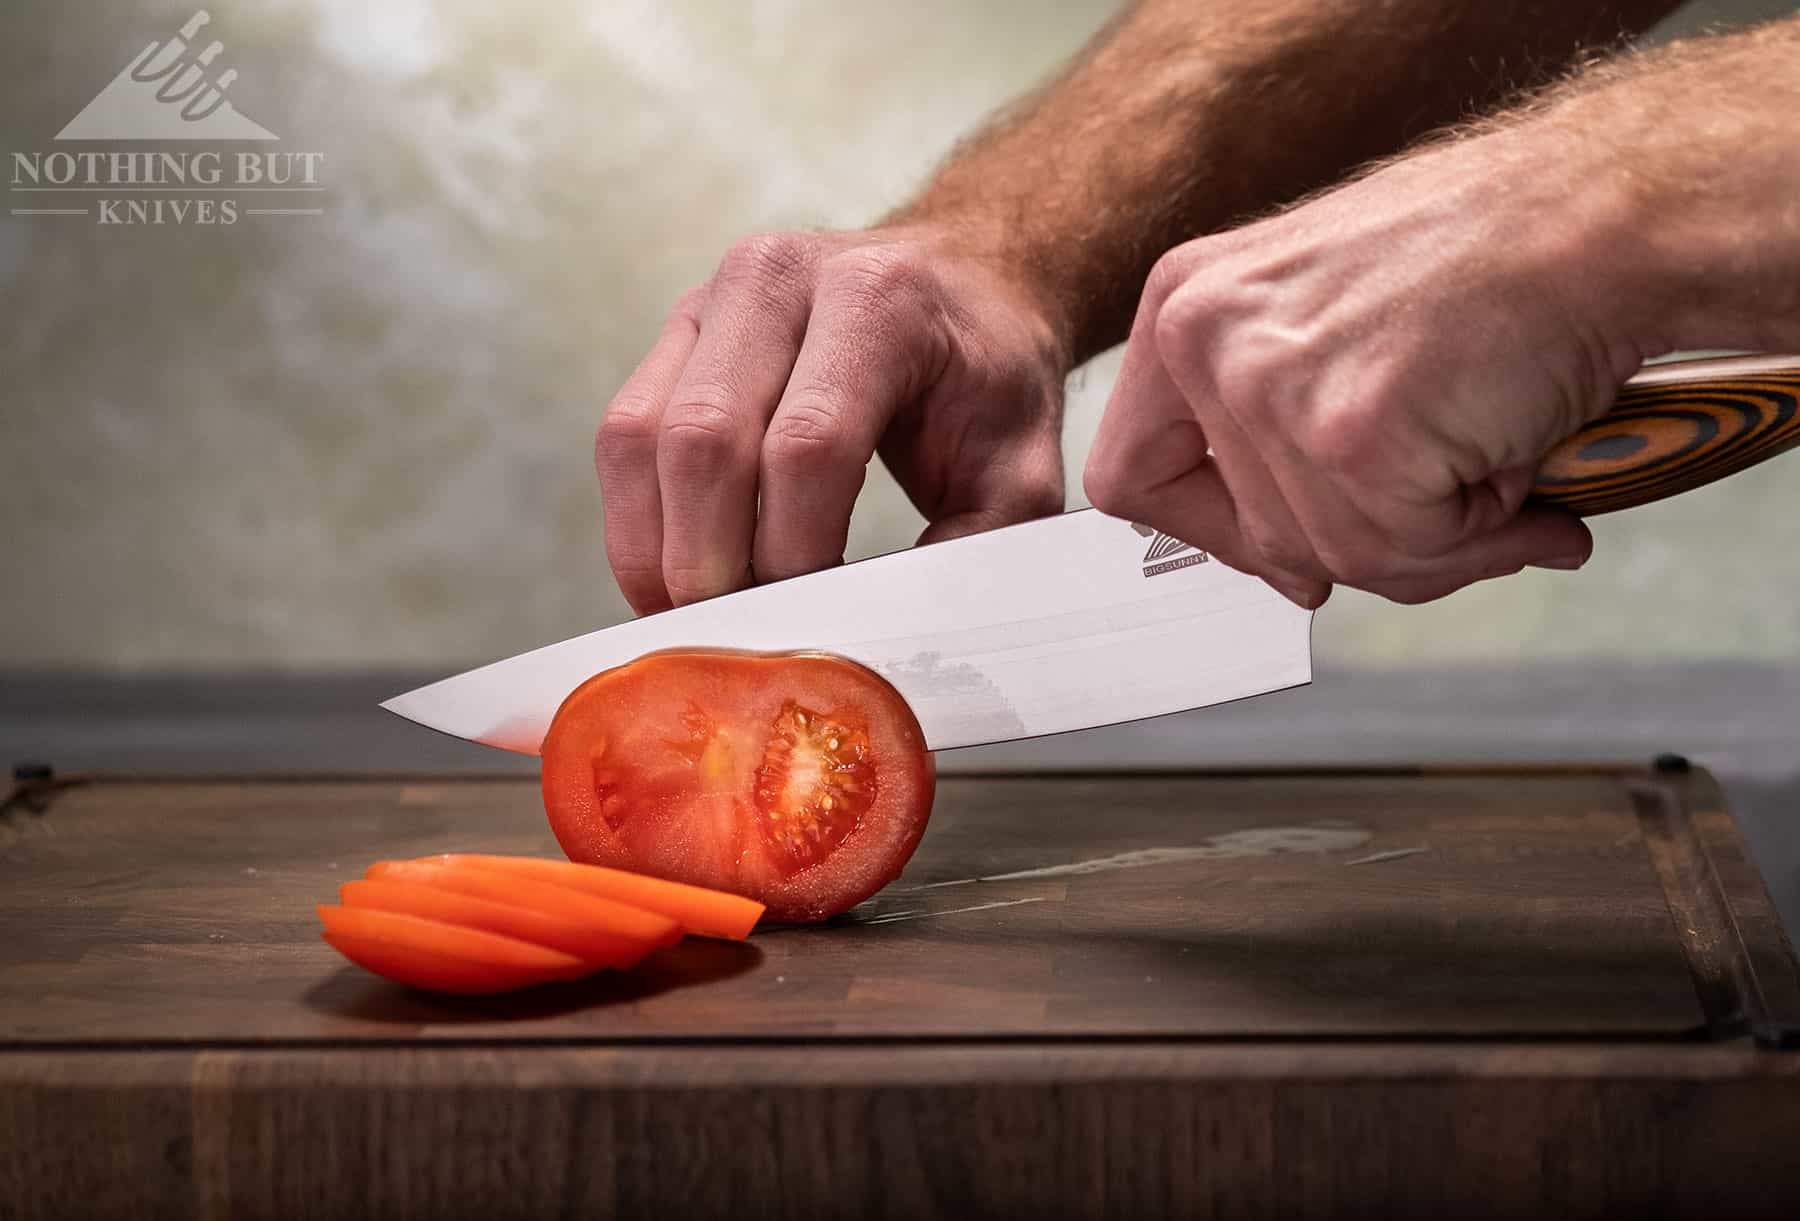 SAVE $100 on Smeg Knife Block Set - Kitchen Kapers